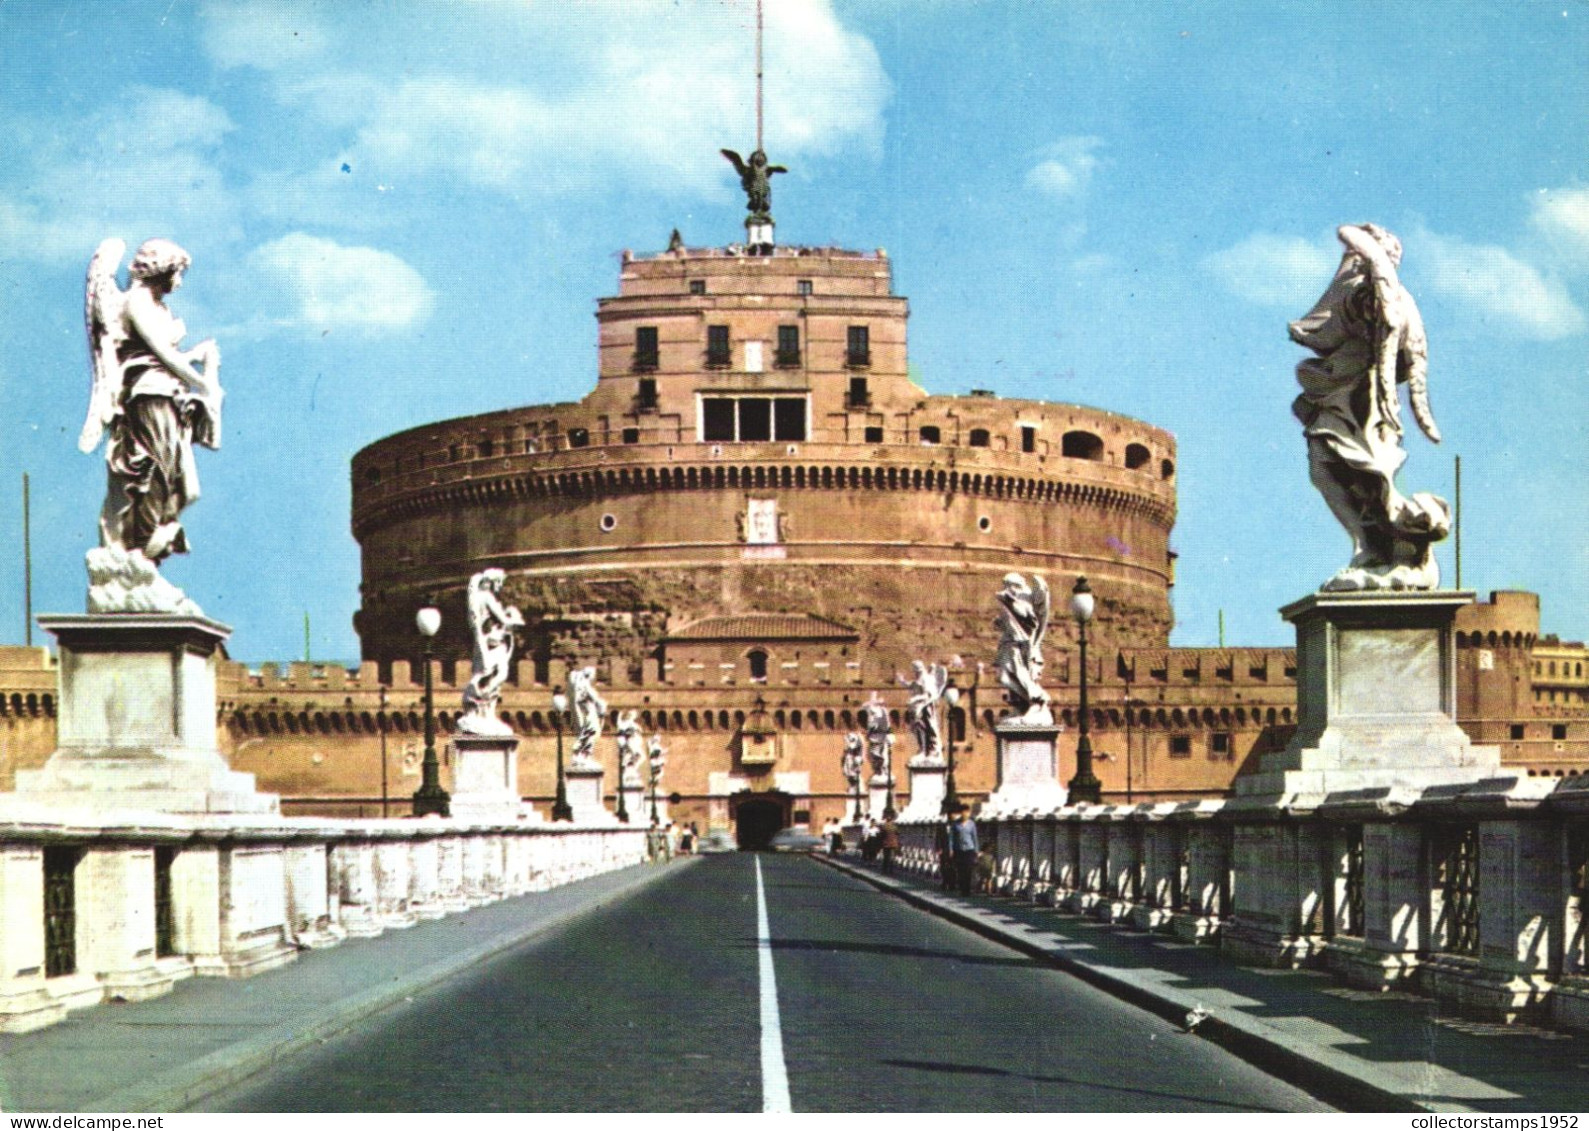 ROME, SAINT ANGELO BRIDGE, CASTLE, ARCHITECTURE, STATUE, ITALY - Bridges